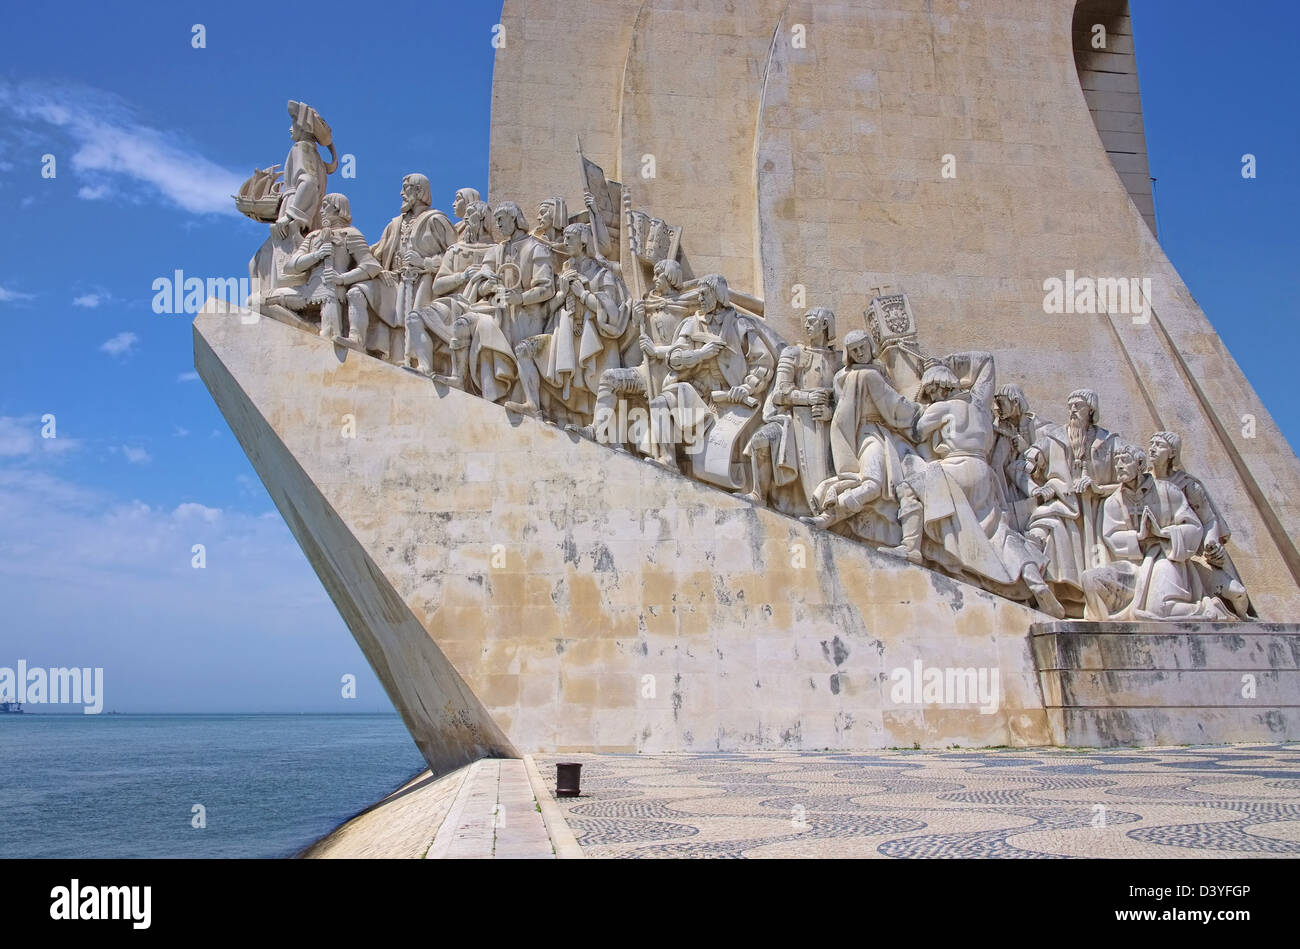 Lisbona Denkmal der Entdeckungen - Lisbona monumento alle scoperte 03 Foto Stock